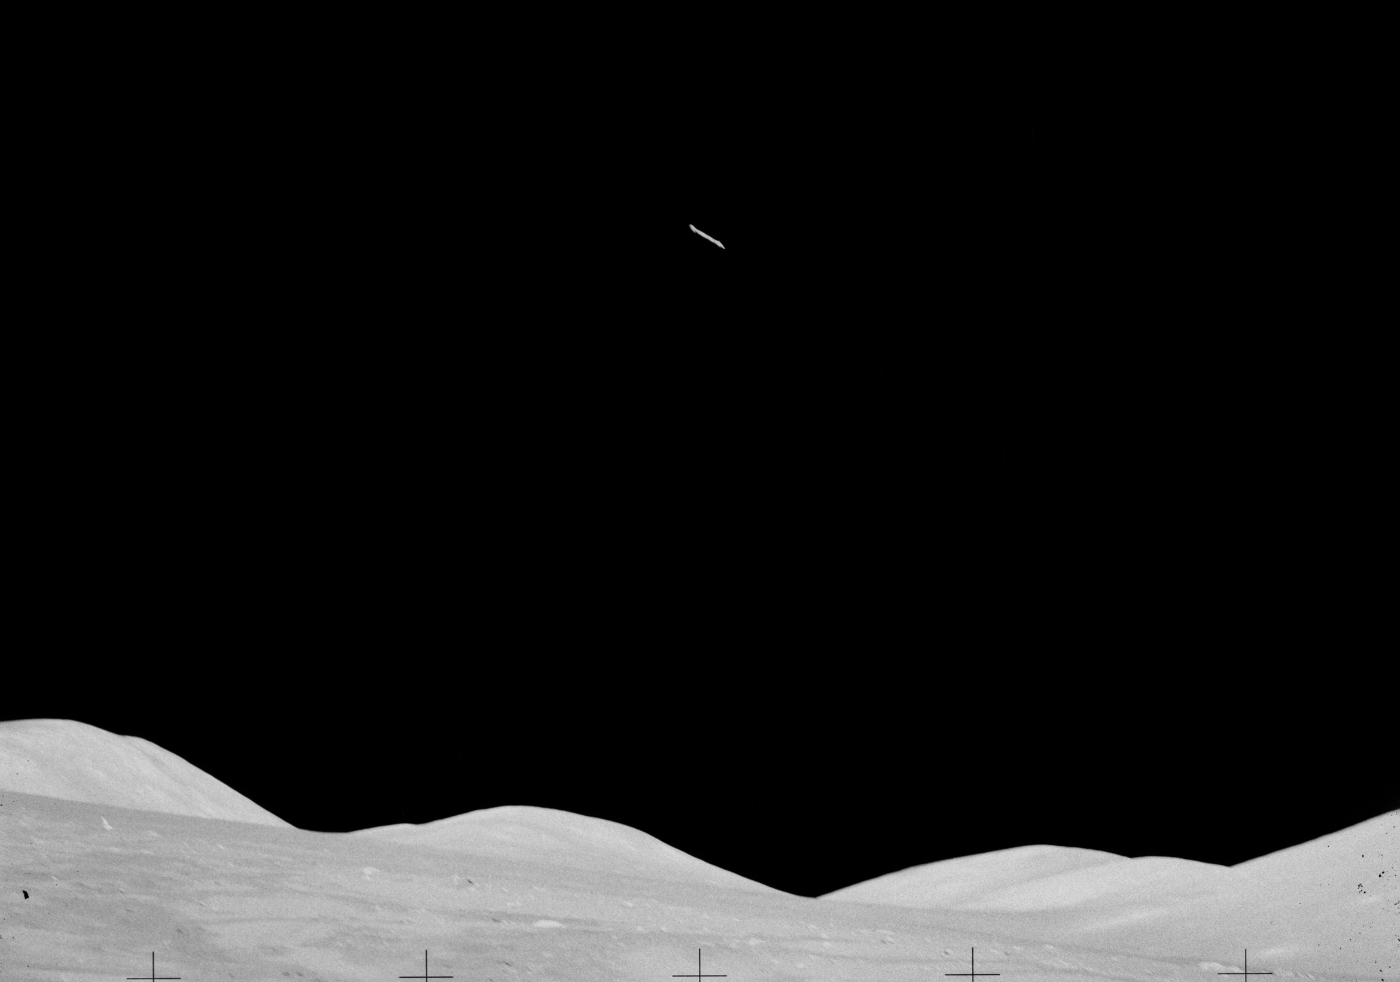 ¿Un ovni volando sobre la Luna? No, un martillo lanzado por un astronauta del ‘Apollo 17’